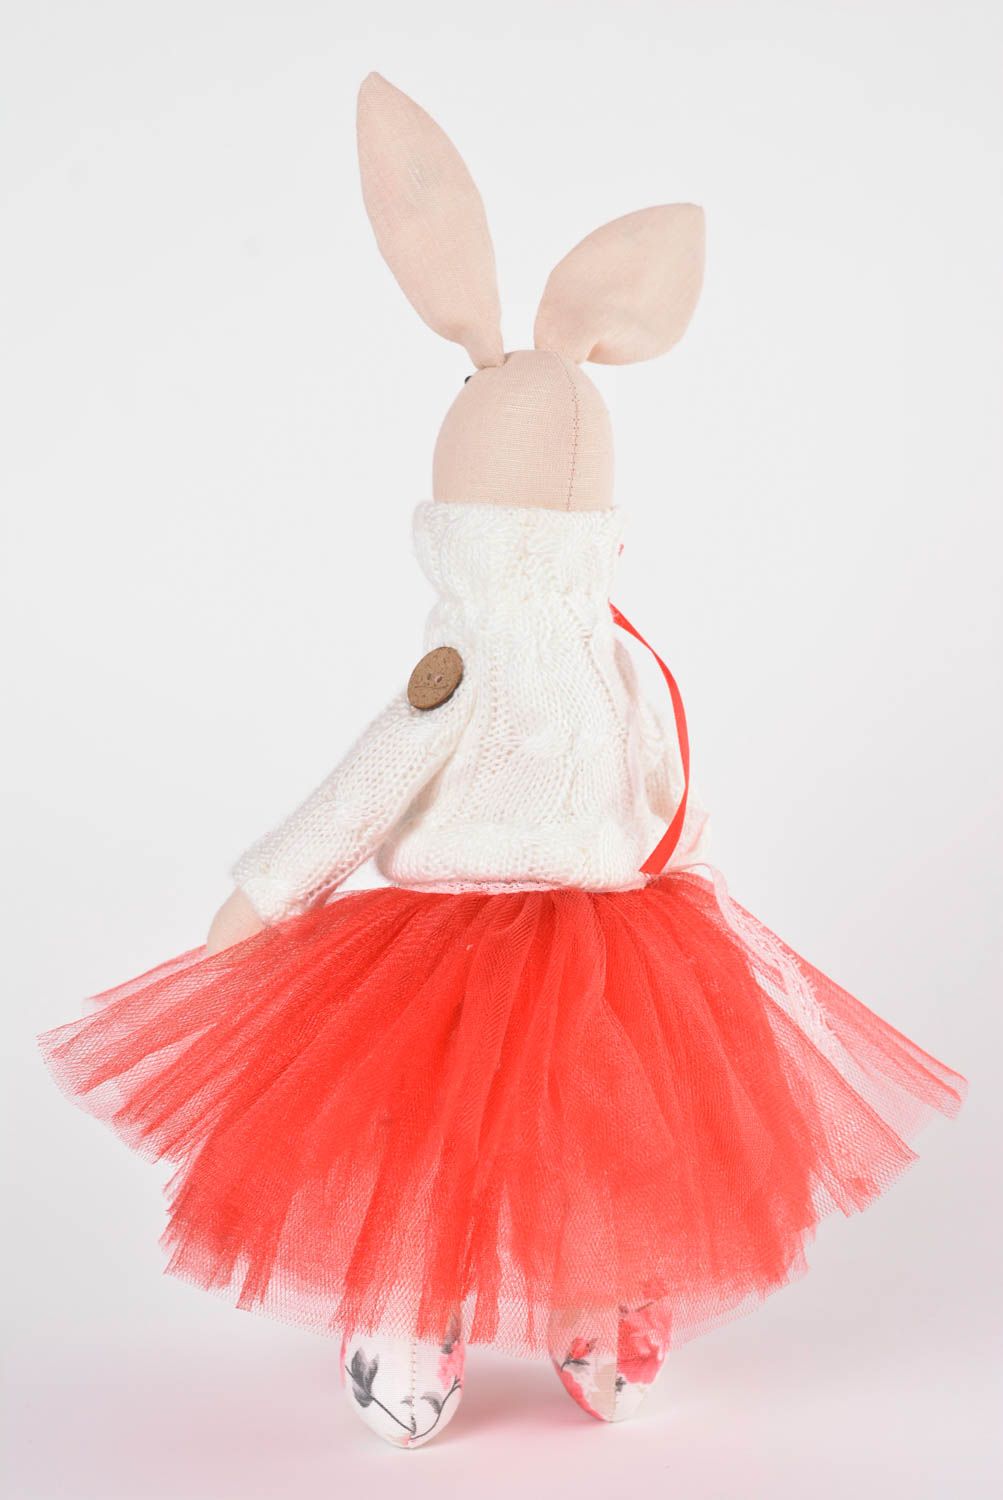 Игрушка заяц ручной работы авторская игрушка красивая стильный подарок из ткани фото 4